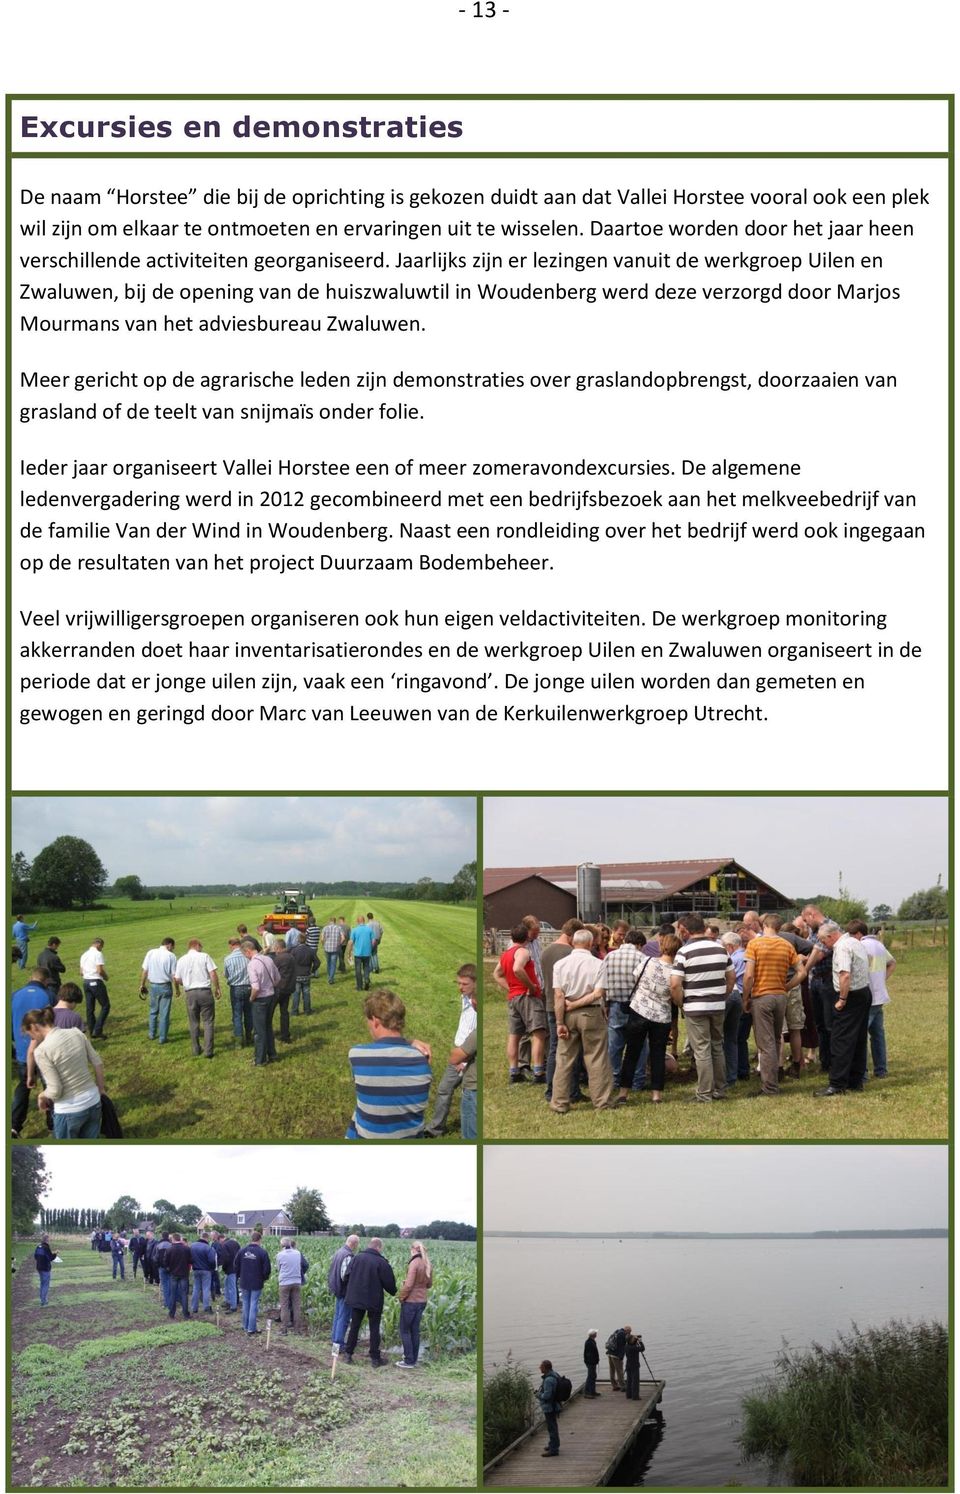 Jaarlijks zijn er lezingen vanuit de werkgroep Uilen en Zwaluwen, bij de opening van de huiszwaluwtil in Woudenberg werd deze verzorgd door Marjos Mourmans van het adviesbureau Zwaluwen.